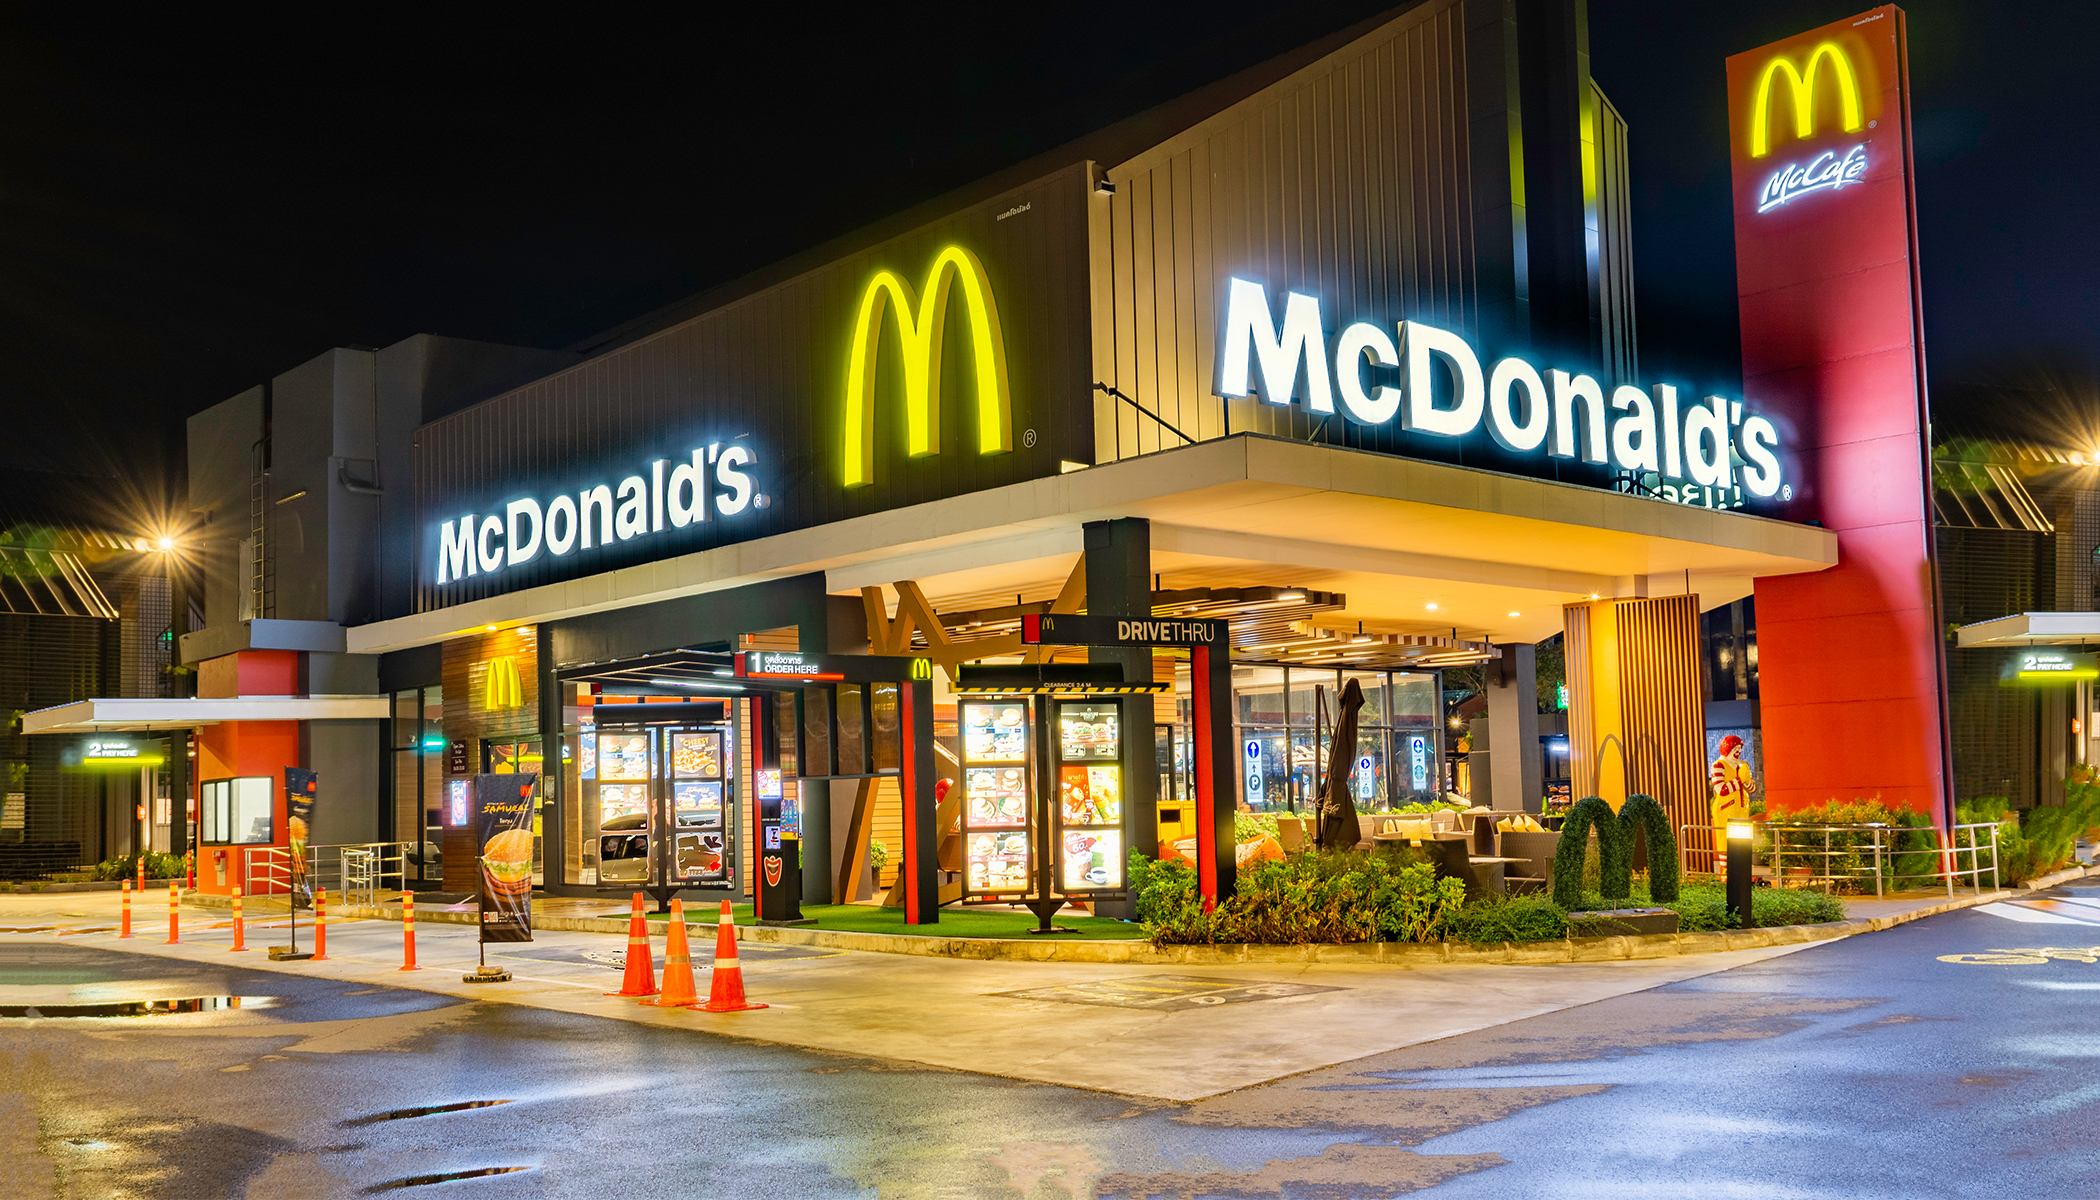 “McDonald's” şəkilləri olmayan, lakin kartof fri qoxusu olan reklam bannerləri quraşdırıb